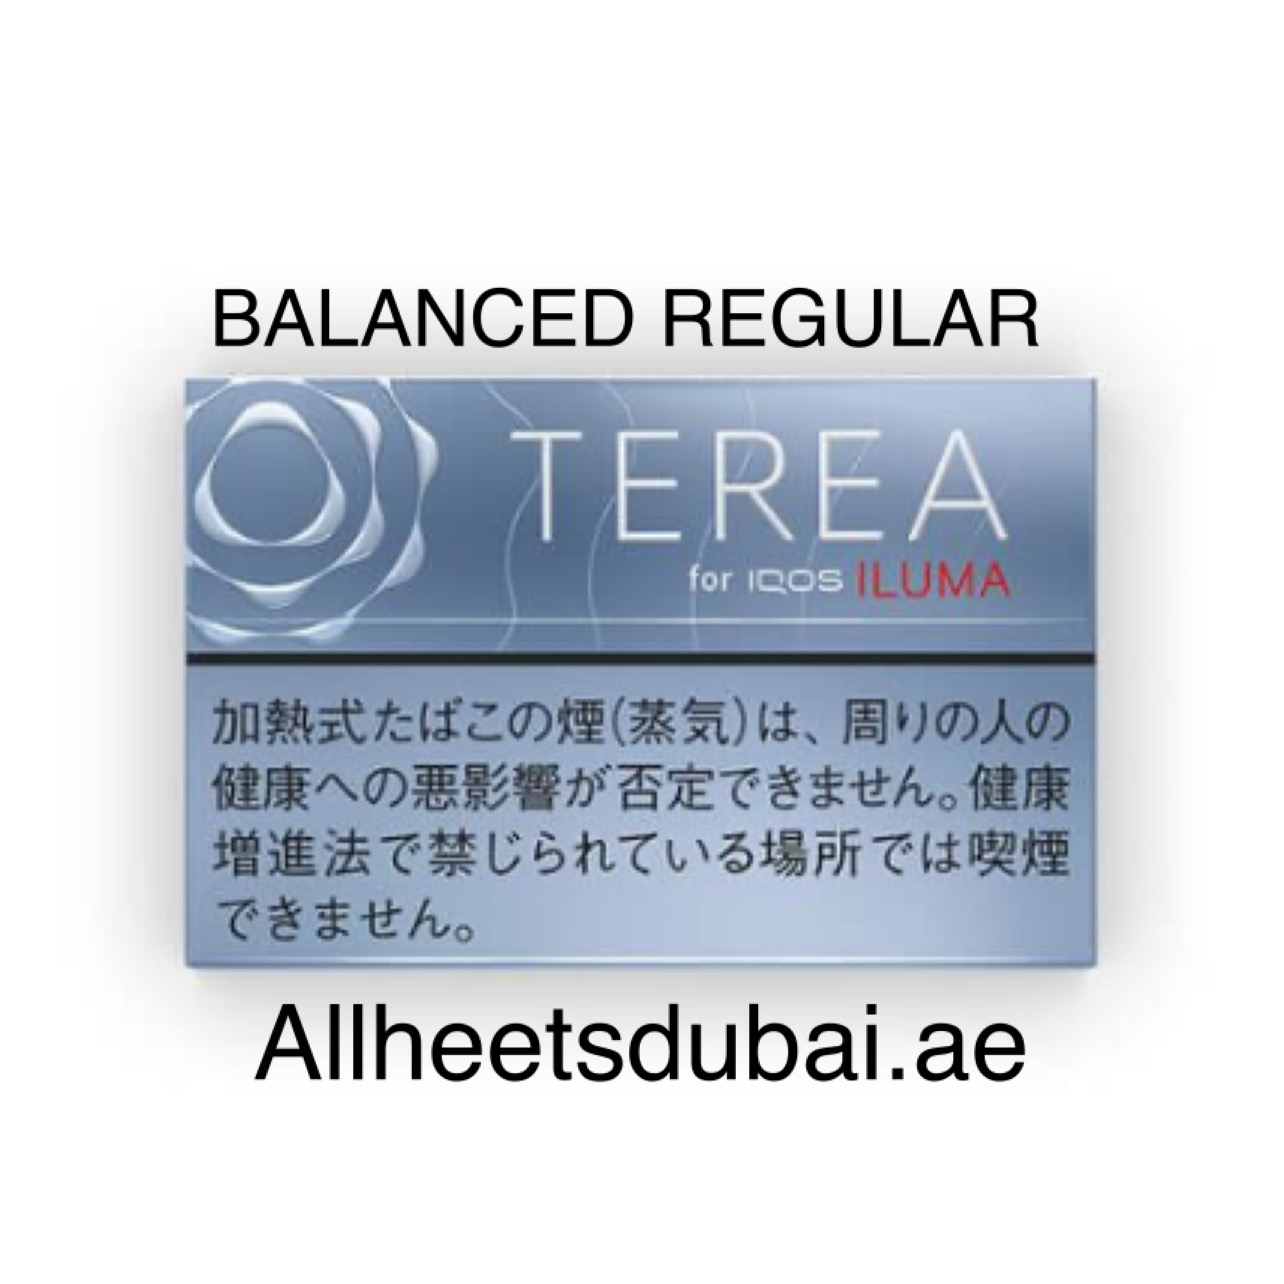 IQOS TEREA Balanced Regular in Dubai UAE - 245 AED